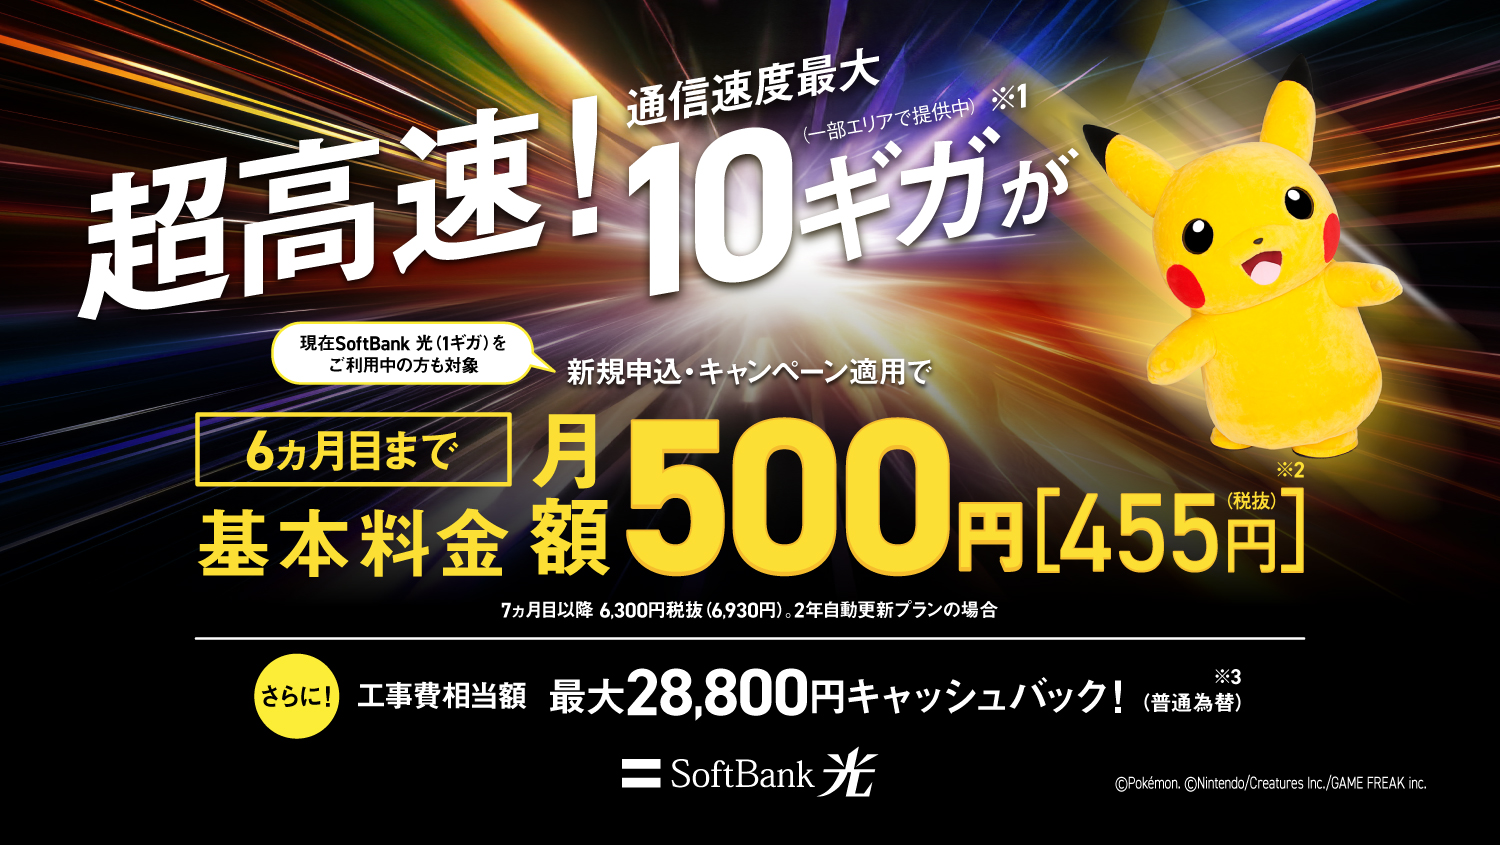 SoftBank 光 とにかく速い！安い！　現在SoftBank 光（1ギガ）をご利用中の方も対象　新規申込・キャンペーン適用で基本料金＋ホームゲートウェイ(N)　通信速度最大10ギガ（一部エリア提供中）※1　6ヵ月目まで月額500円※2　SoftBank 光・10ギガ（2年自動更新の場合）　7ヵ月目以降月額で6930円※2　さらに工事費相当額　最大28,800円キャッシュバック！（普通為替）※3